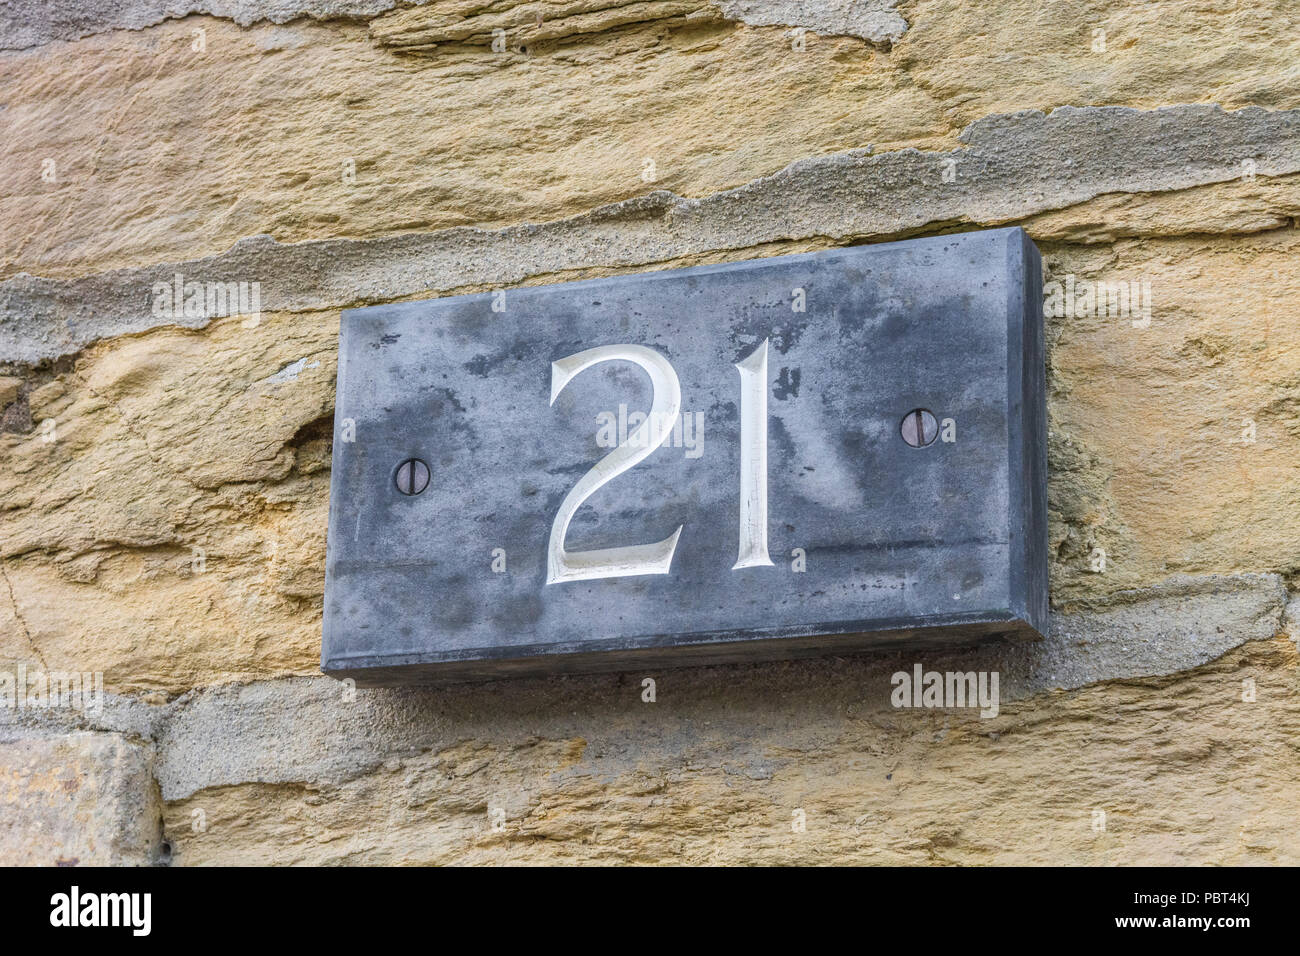 Casa número 21 en el exterior de la vivienda. Número impar Fotografía de  stock - Alamy